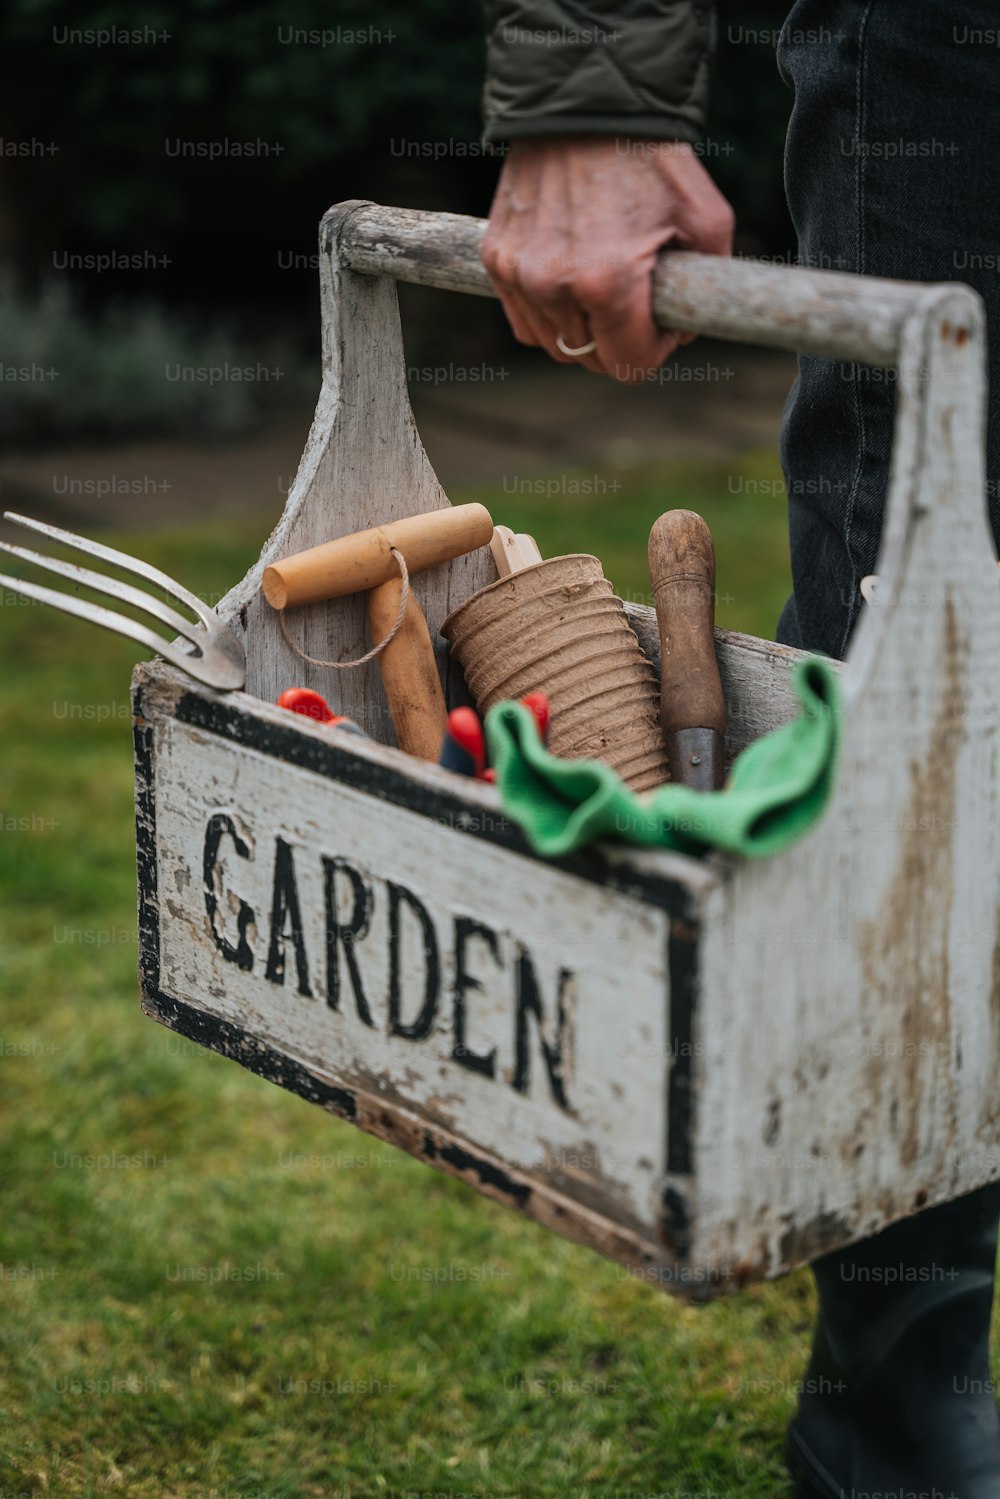 Una persona sosteniendo una caja de jardín llena de herramientas de jardinería